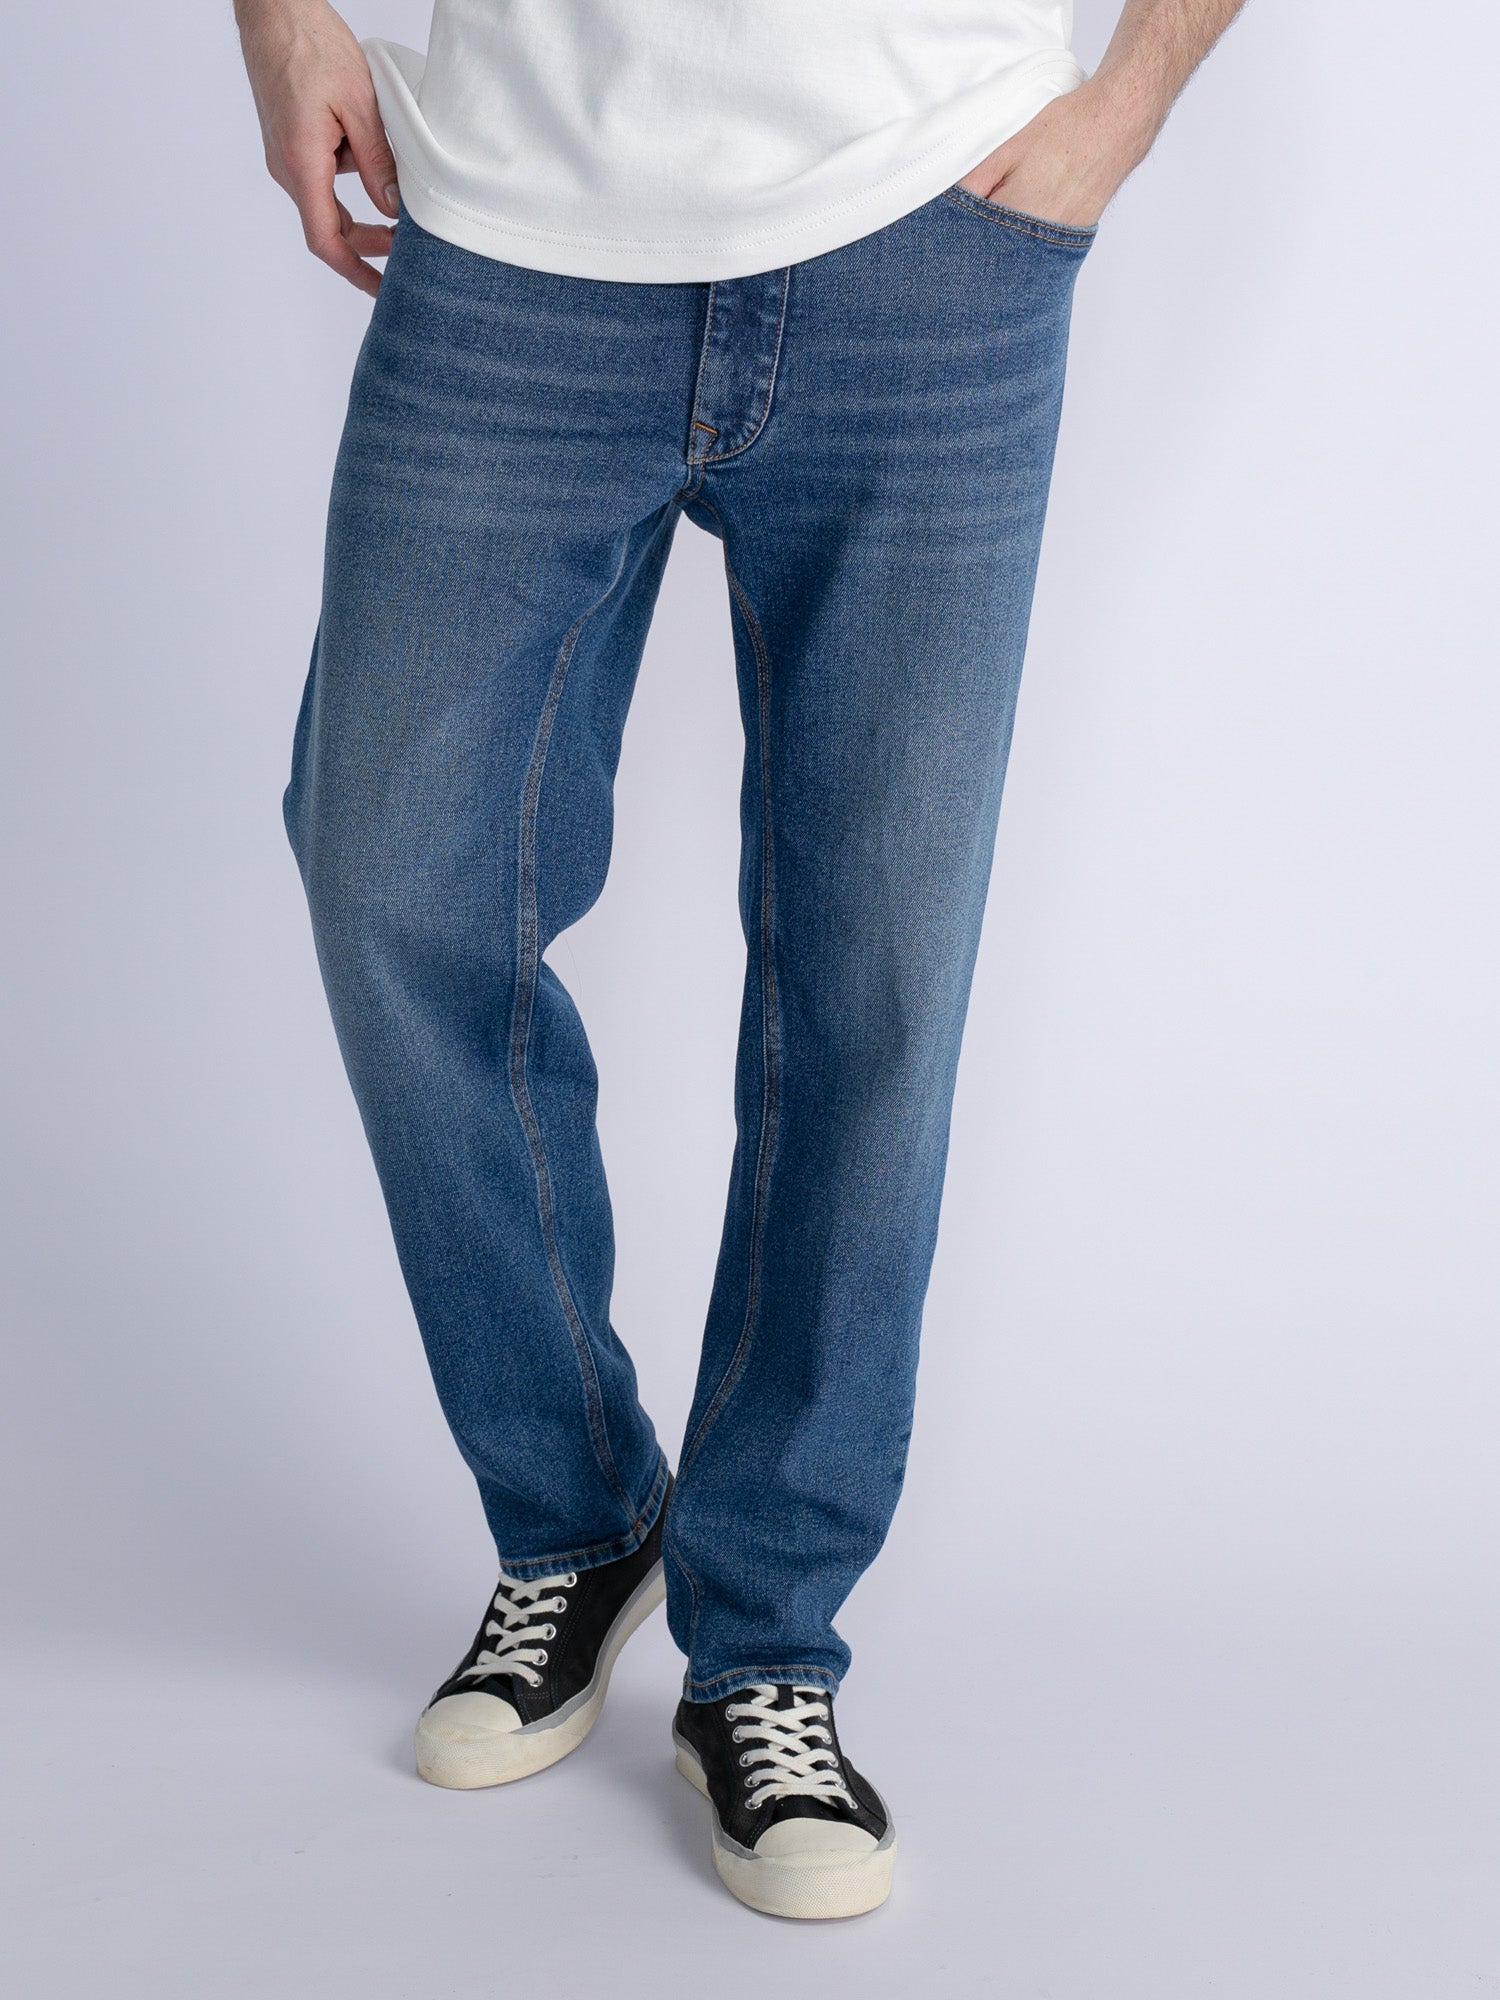 Regular Fit Denim Jeans Collection - Men